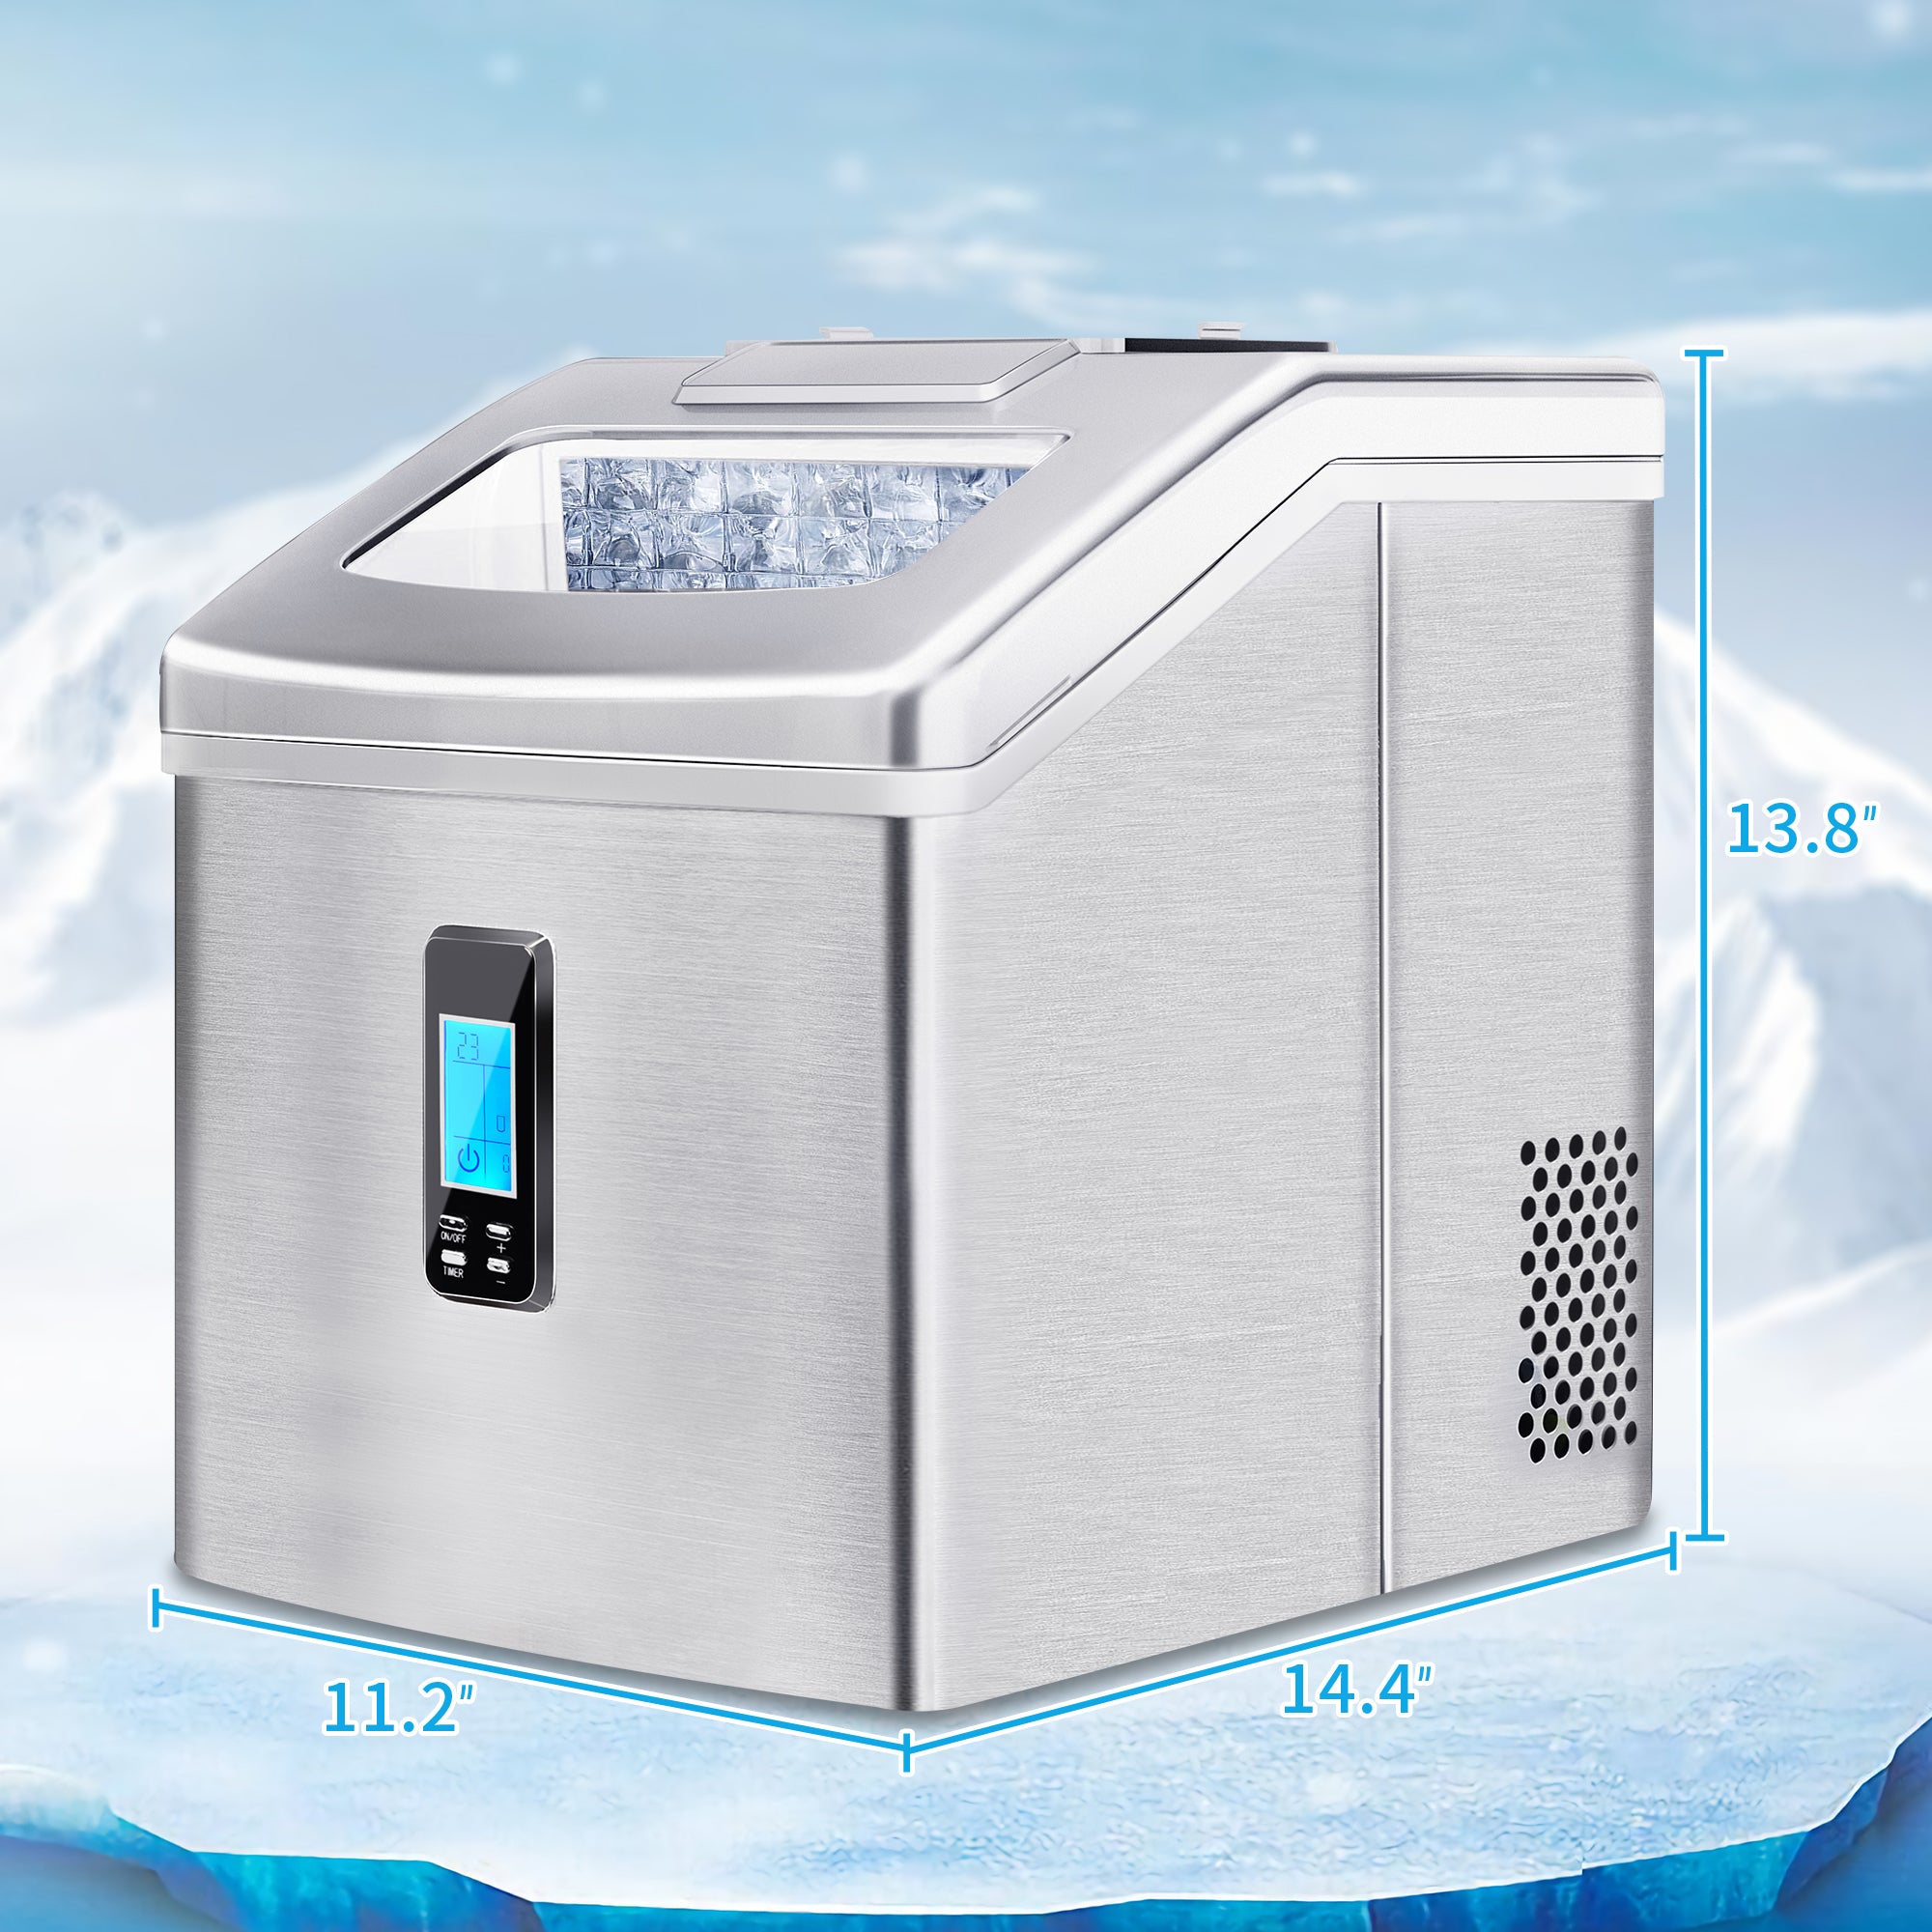 Portable Countertop Ice Maker Machine, Silver